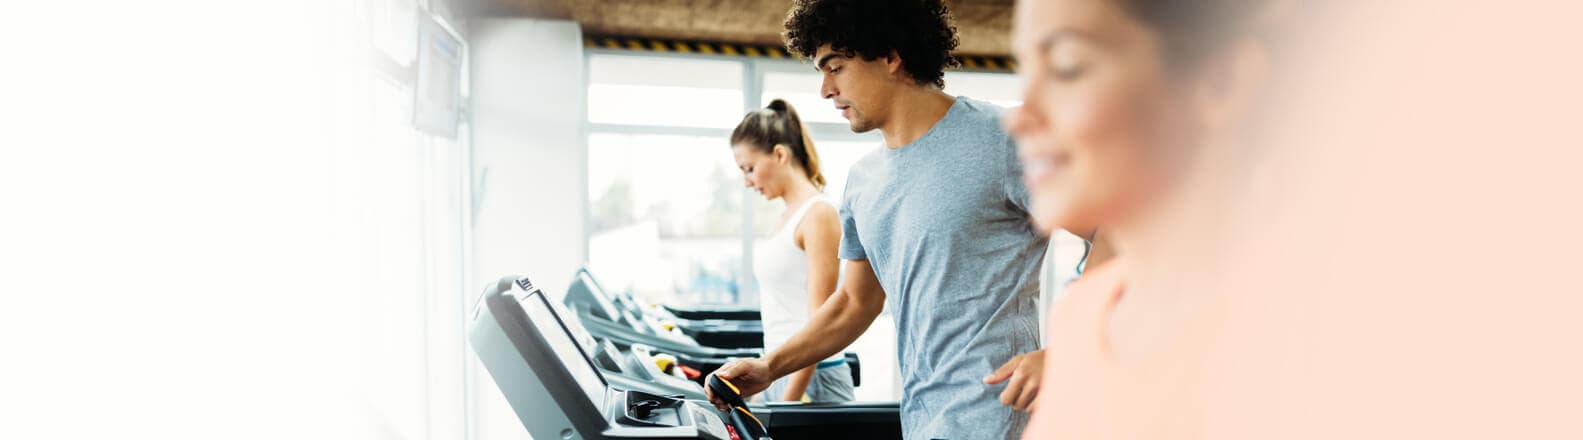 Cardio antes ou depois da musculação: descubra o que é melhor para seu treino!